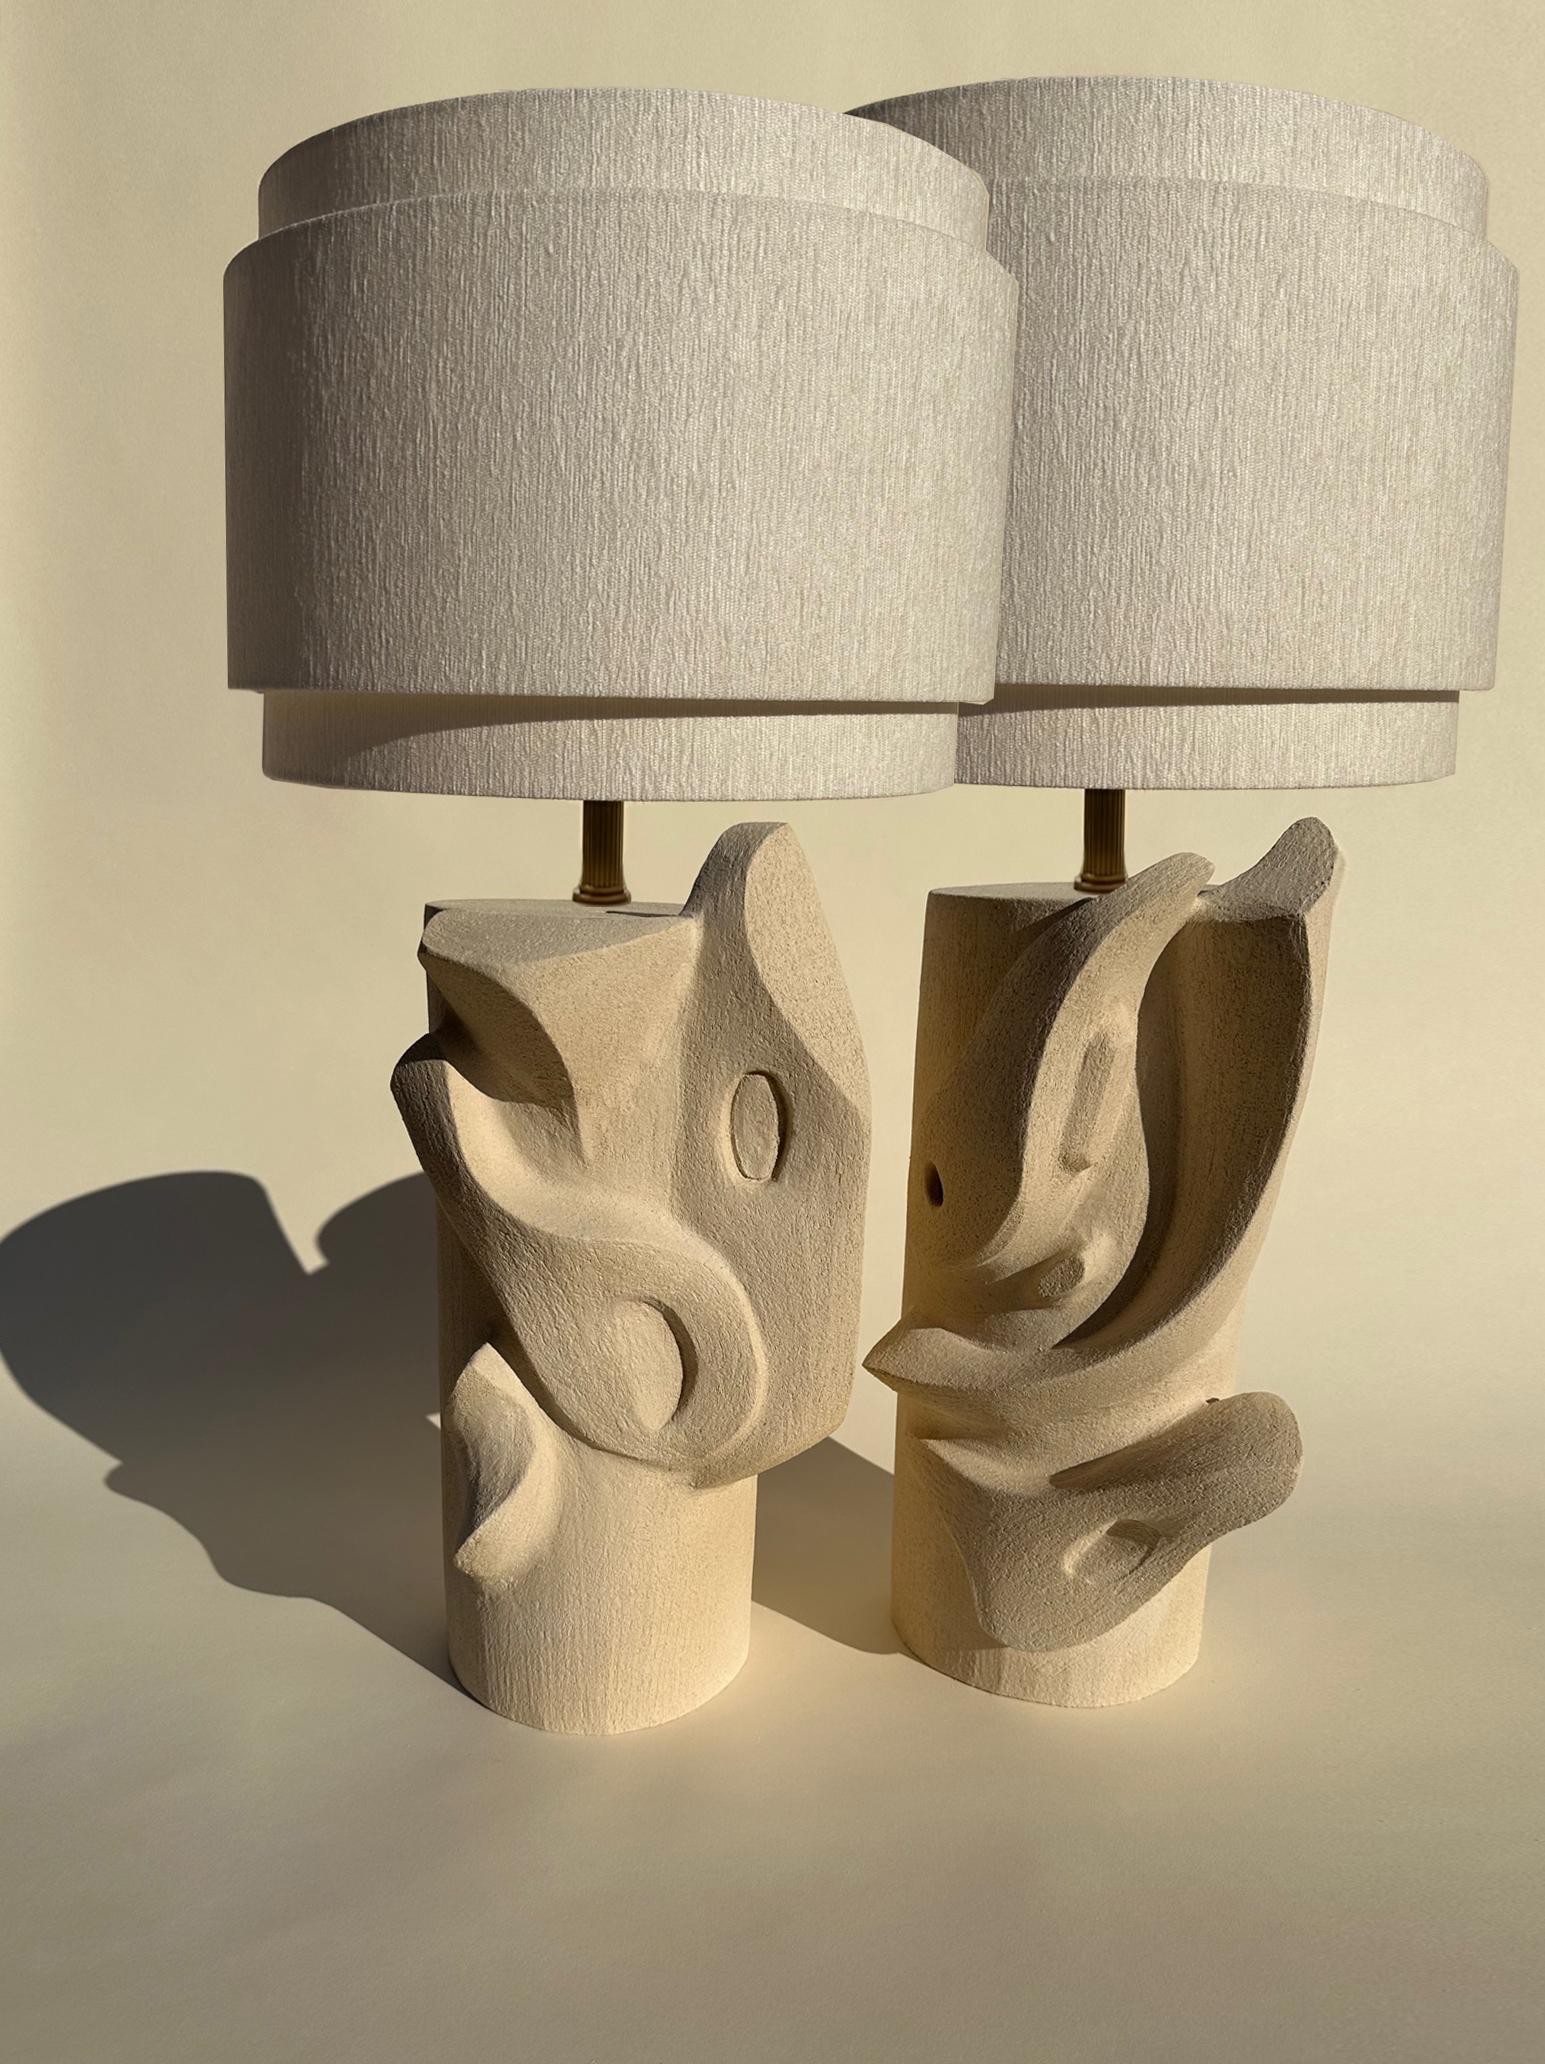 Lampe de table Bas Relief d'O Olivia Cognet
Dimensions : Base : D 20 x H 45 cm, Abat-jour : 40 x 40 cm
Matériaux : Céramique.

Depuis qu'elle s'est installée à Los Angeles en 2016, l'artiste et designer française Olivia Cognet s'est concentrée sur